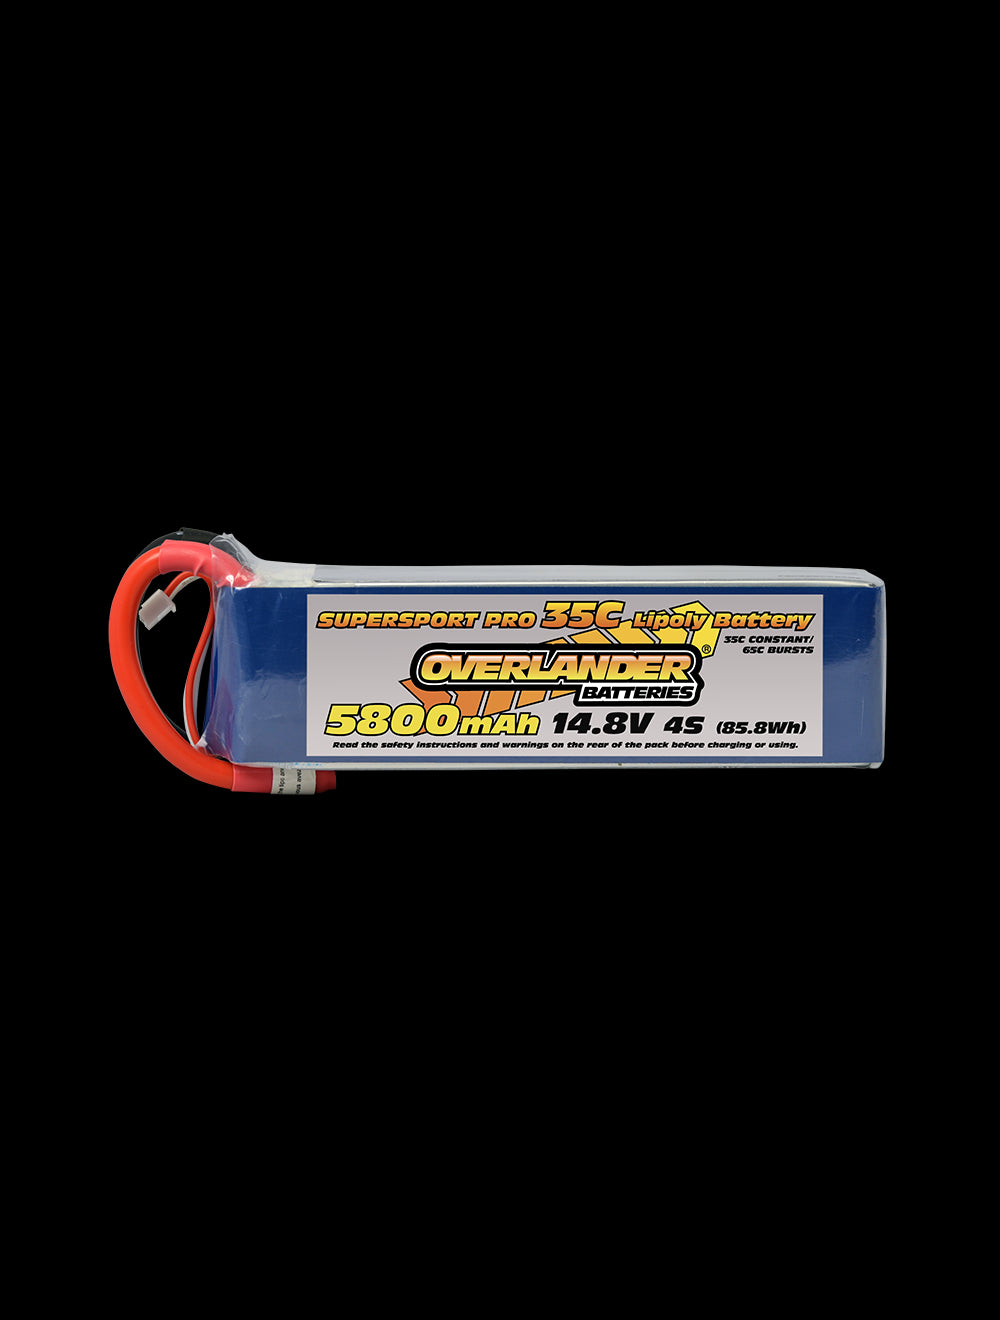 Overlander 5800mAh 14.8V 4S 35C Supersport Pro LiPo Battery - EC5 Connector 3115